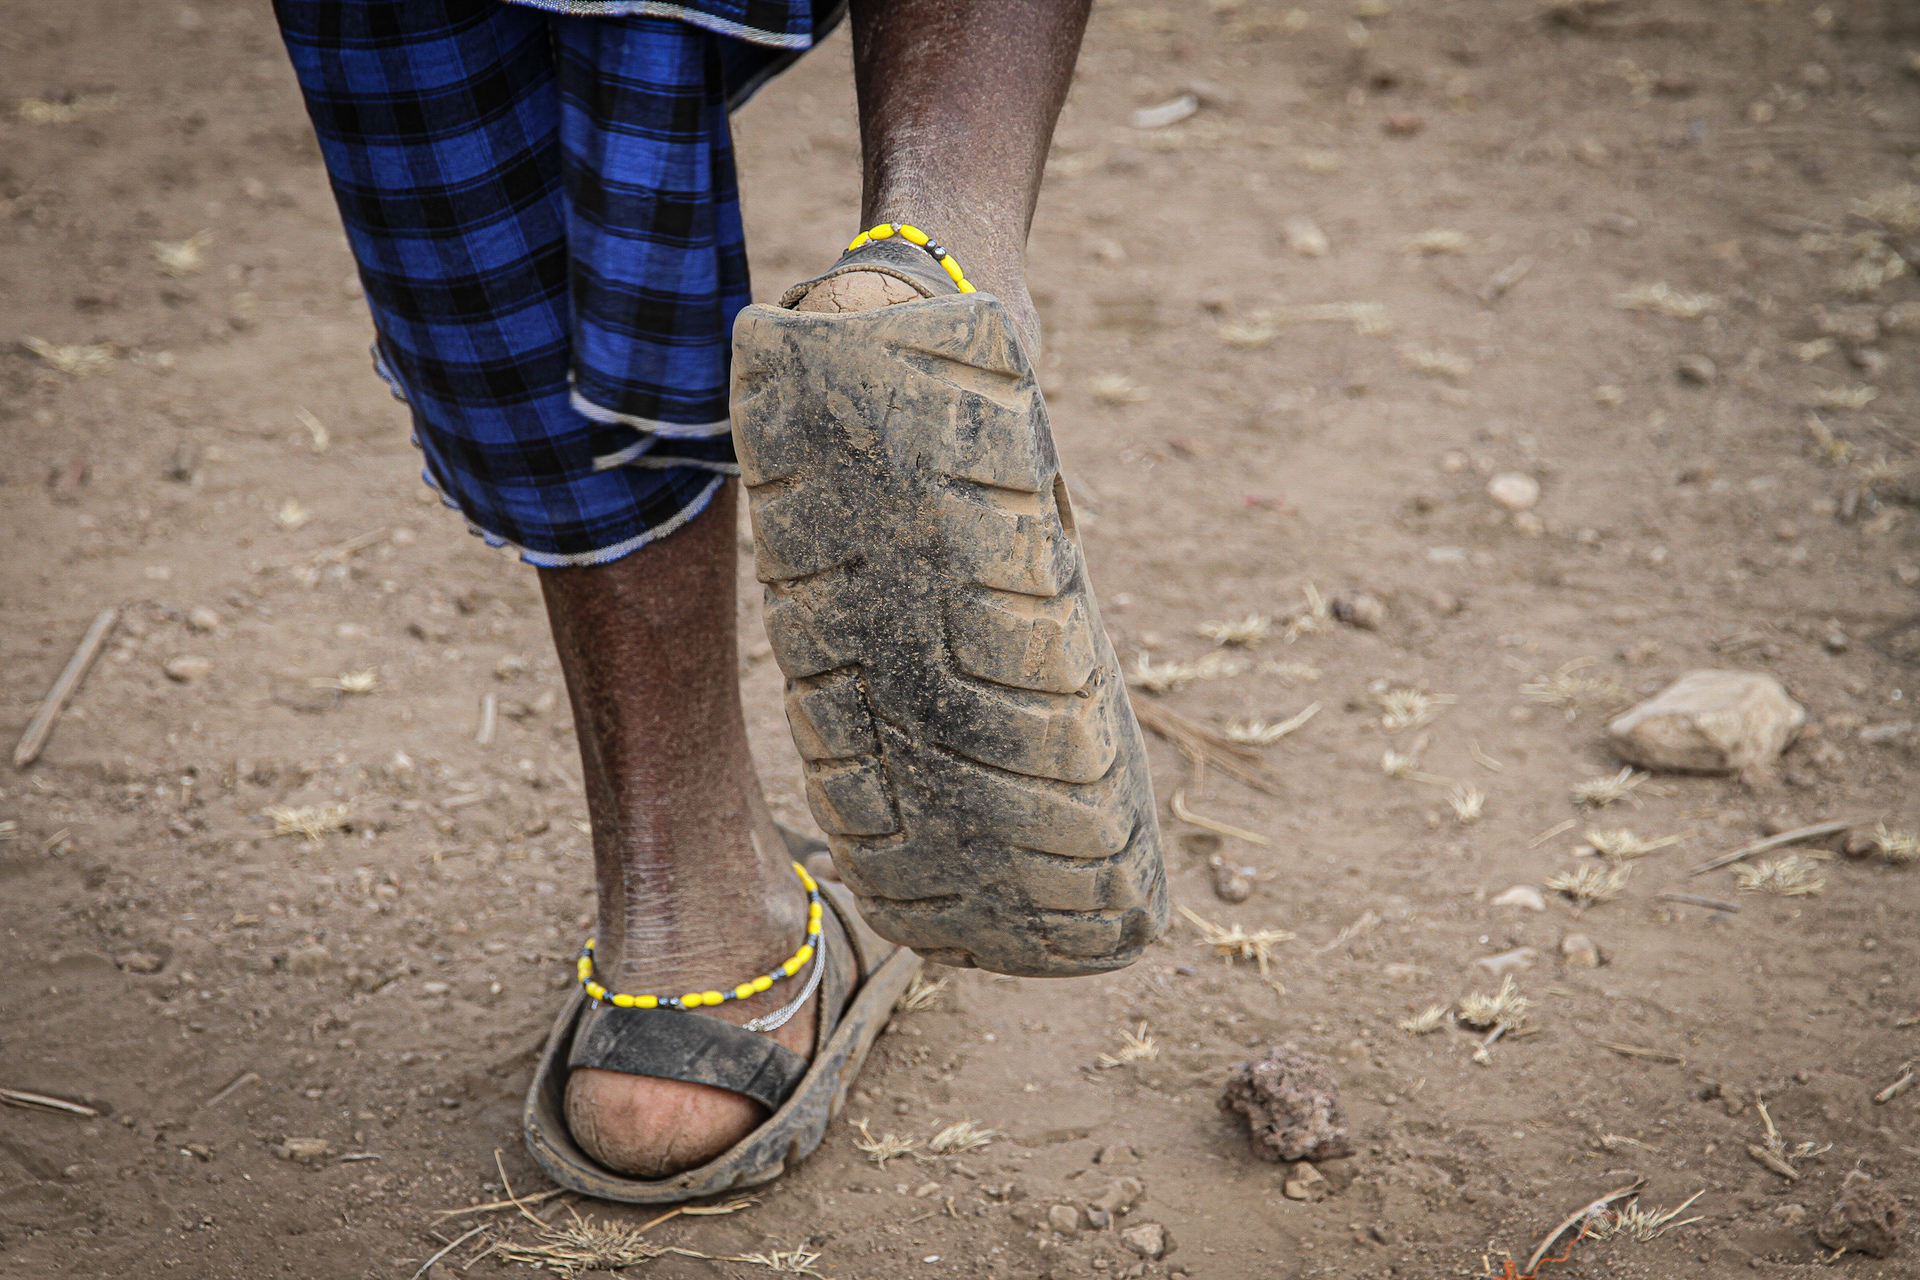 Masajské obuv z pneumatiky, NP Serengeti - Planeta lidí